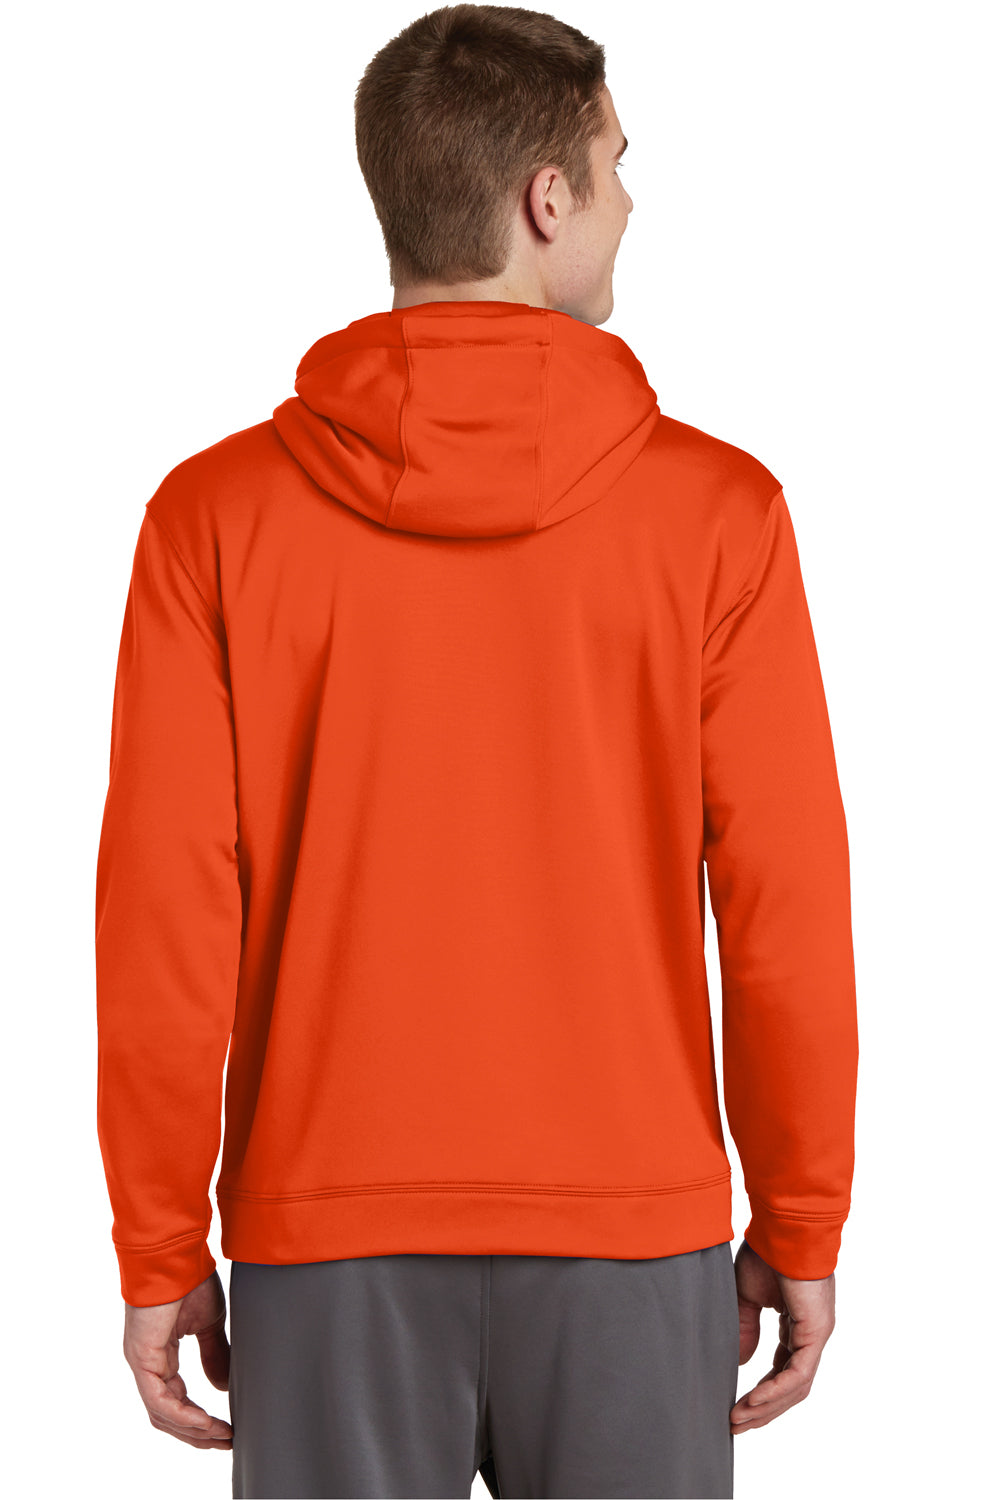 Sport-Tek F244 Mens Sport-Wick Moisture Wicking Fleece Hooded Sweatshirt Hoodie Orange Back